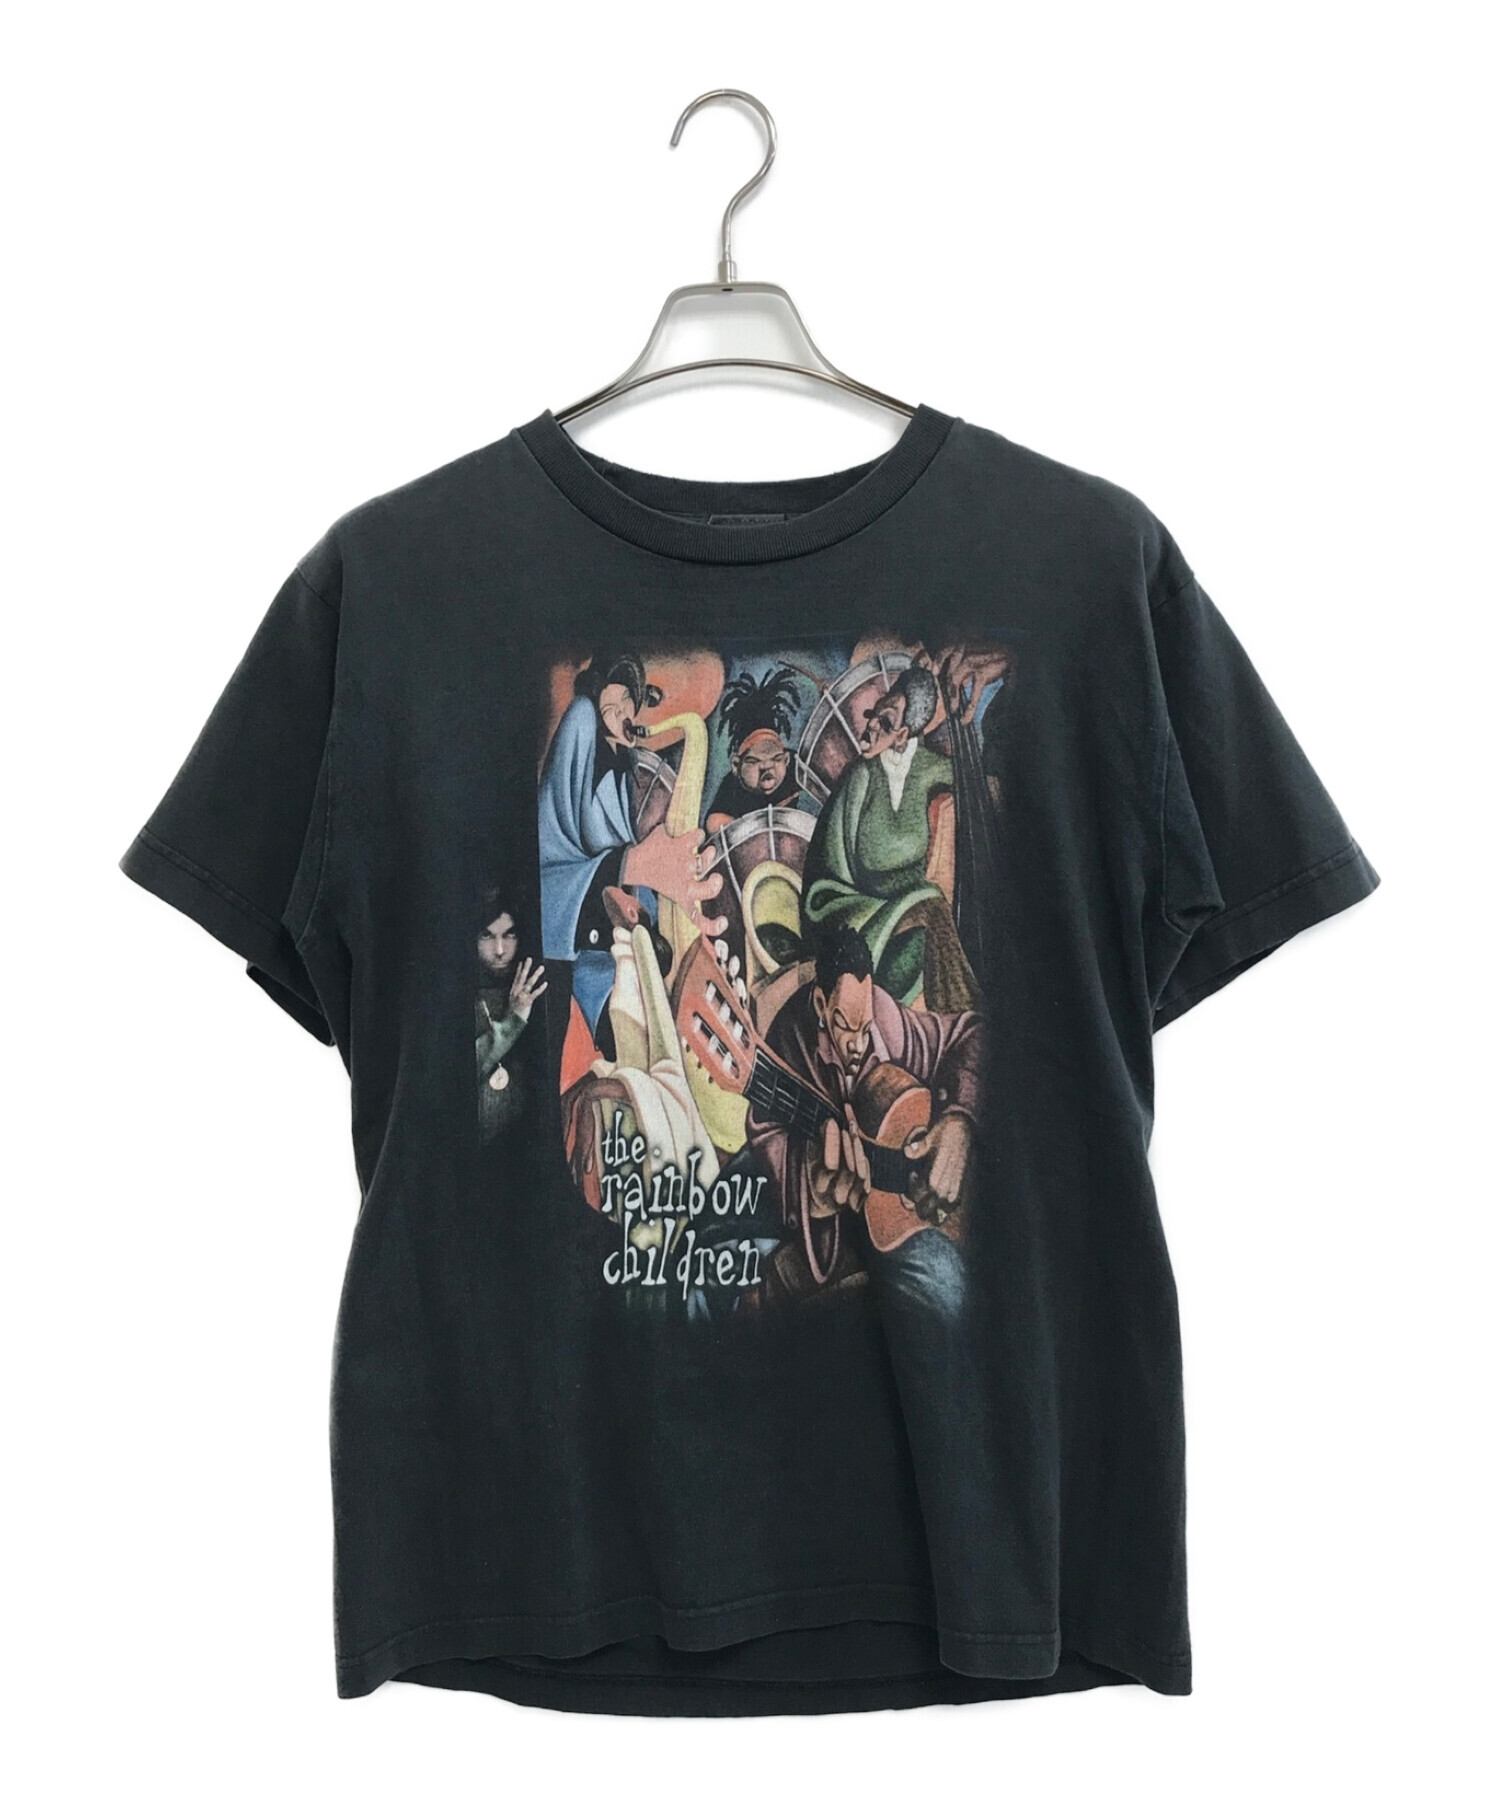 00s プリンス 2004 ツアー Tシャツ メンズ XL ブラック 半袖